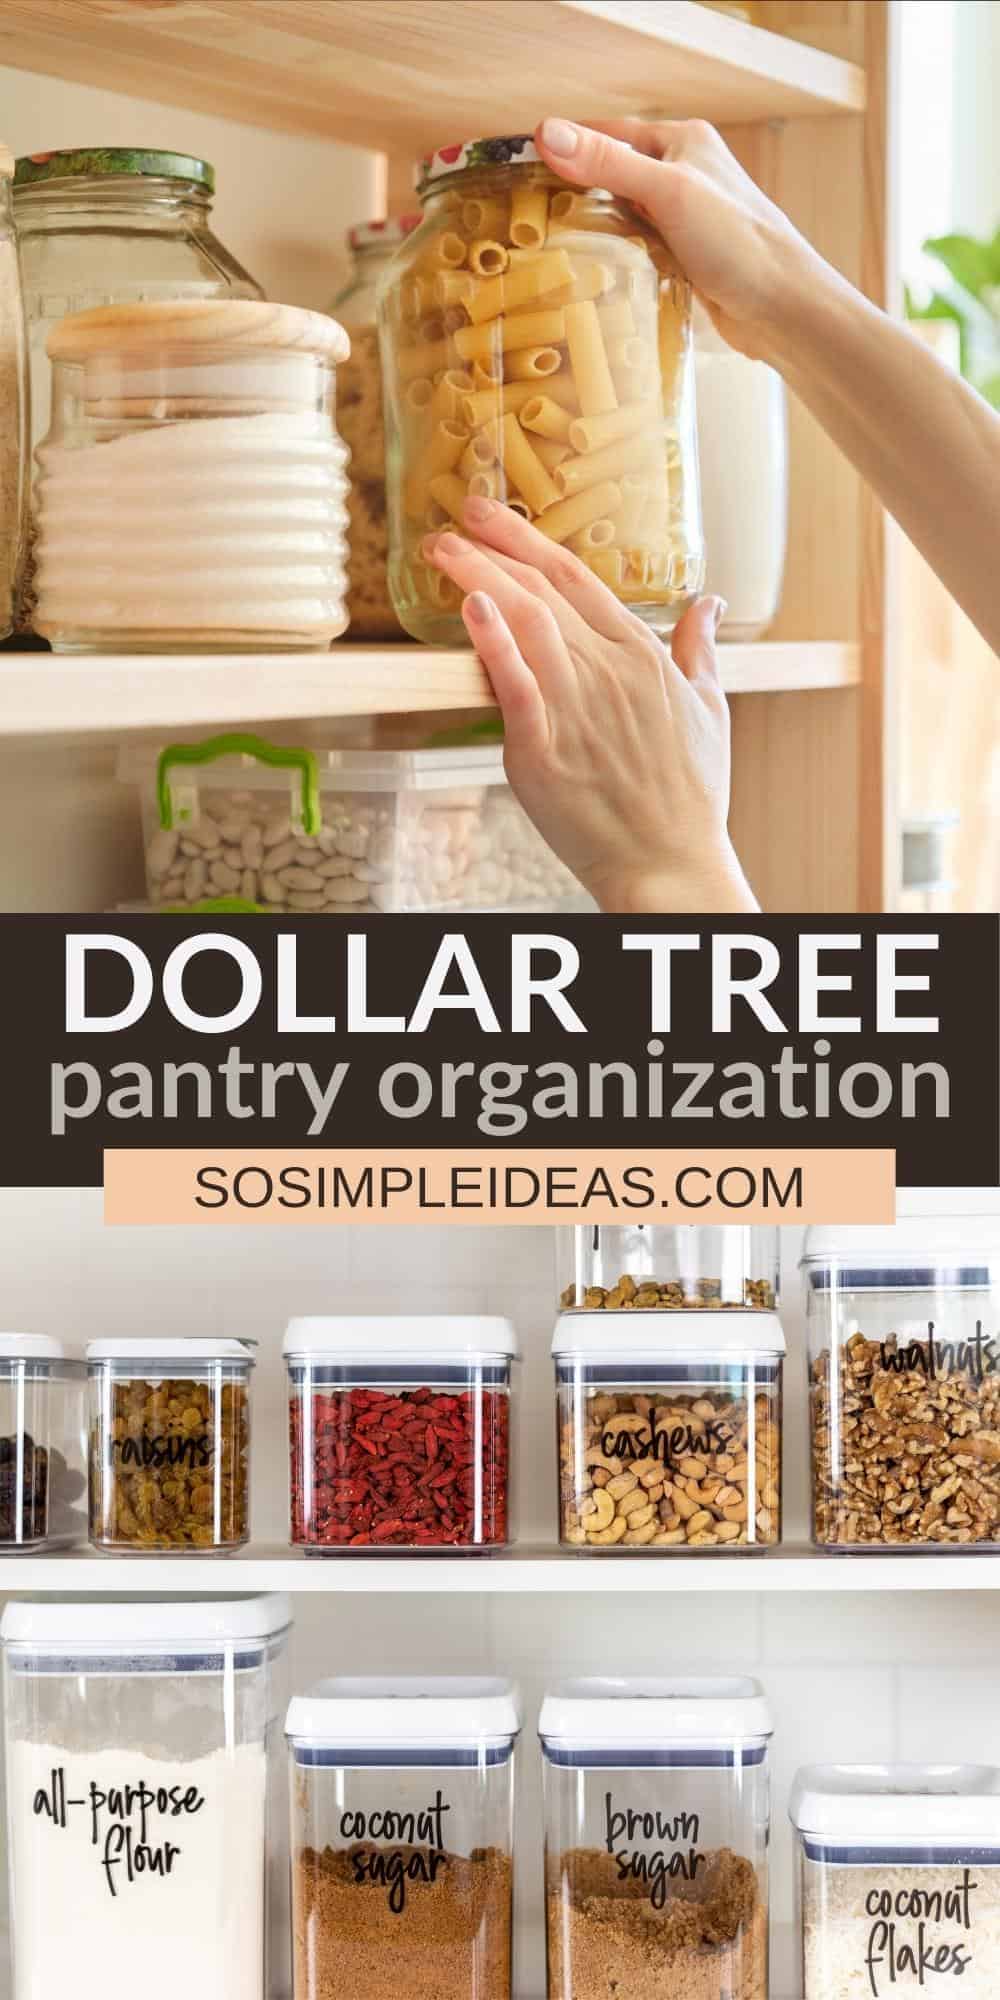 dollar tree pantry organization pinterest image.